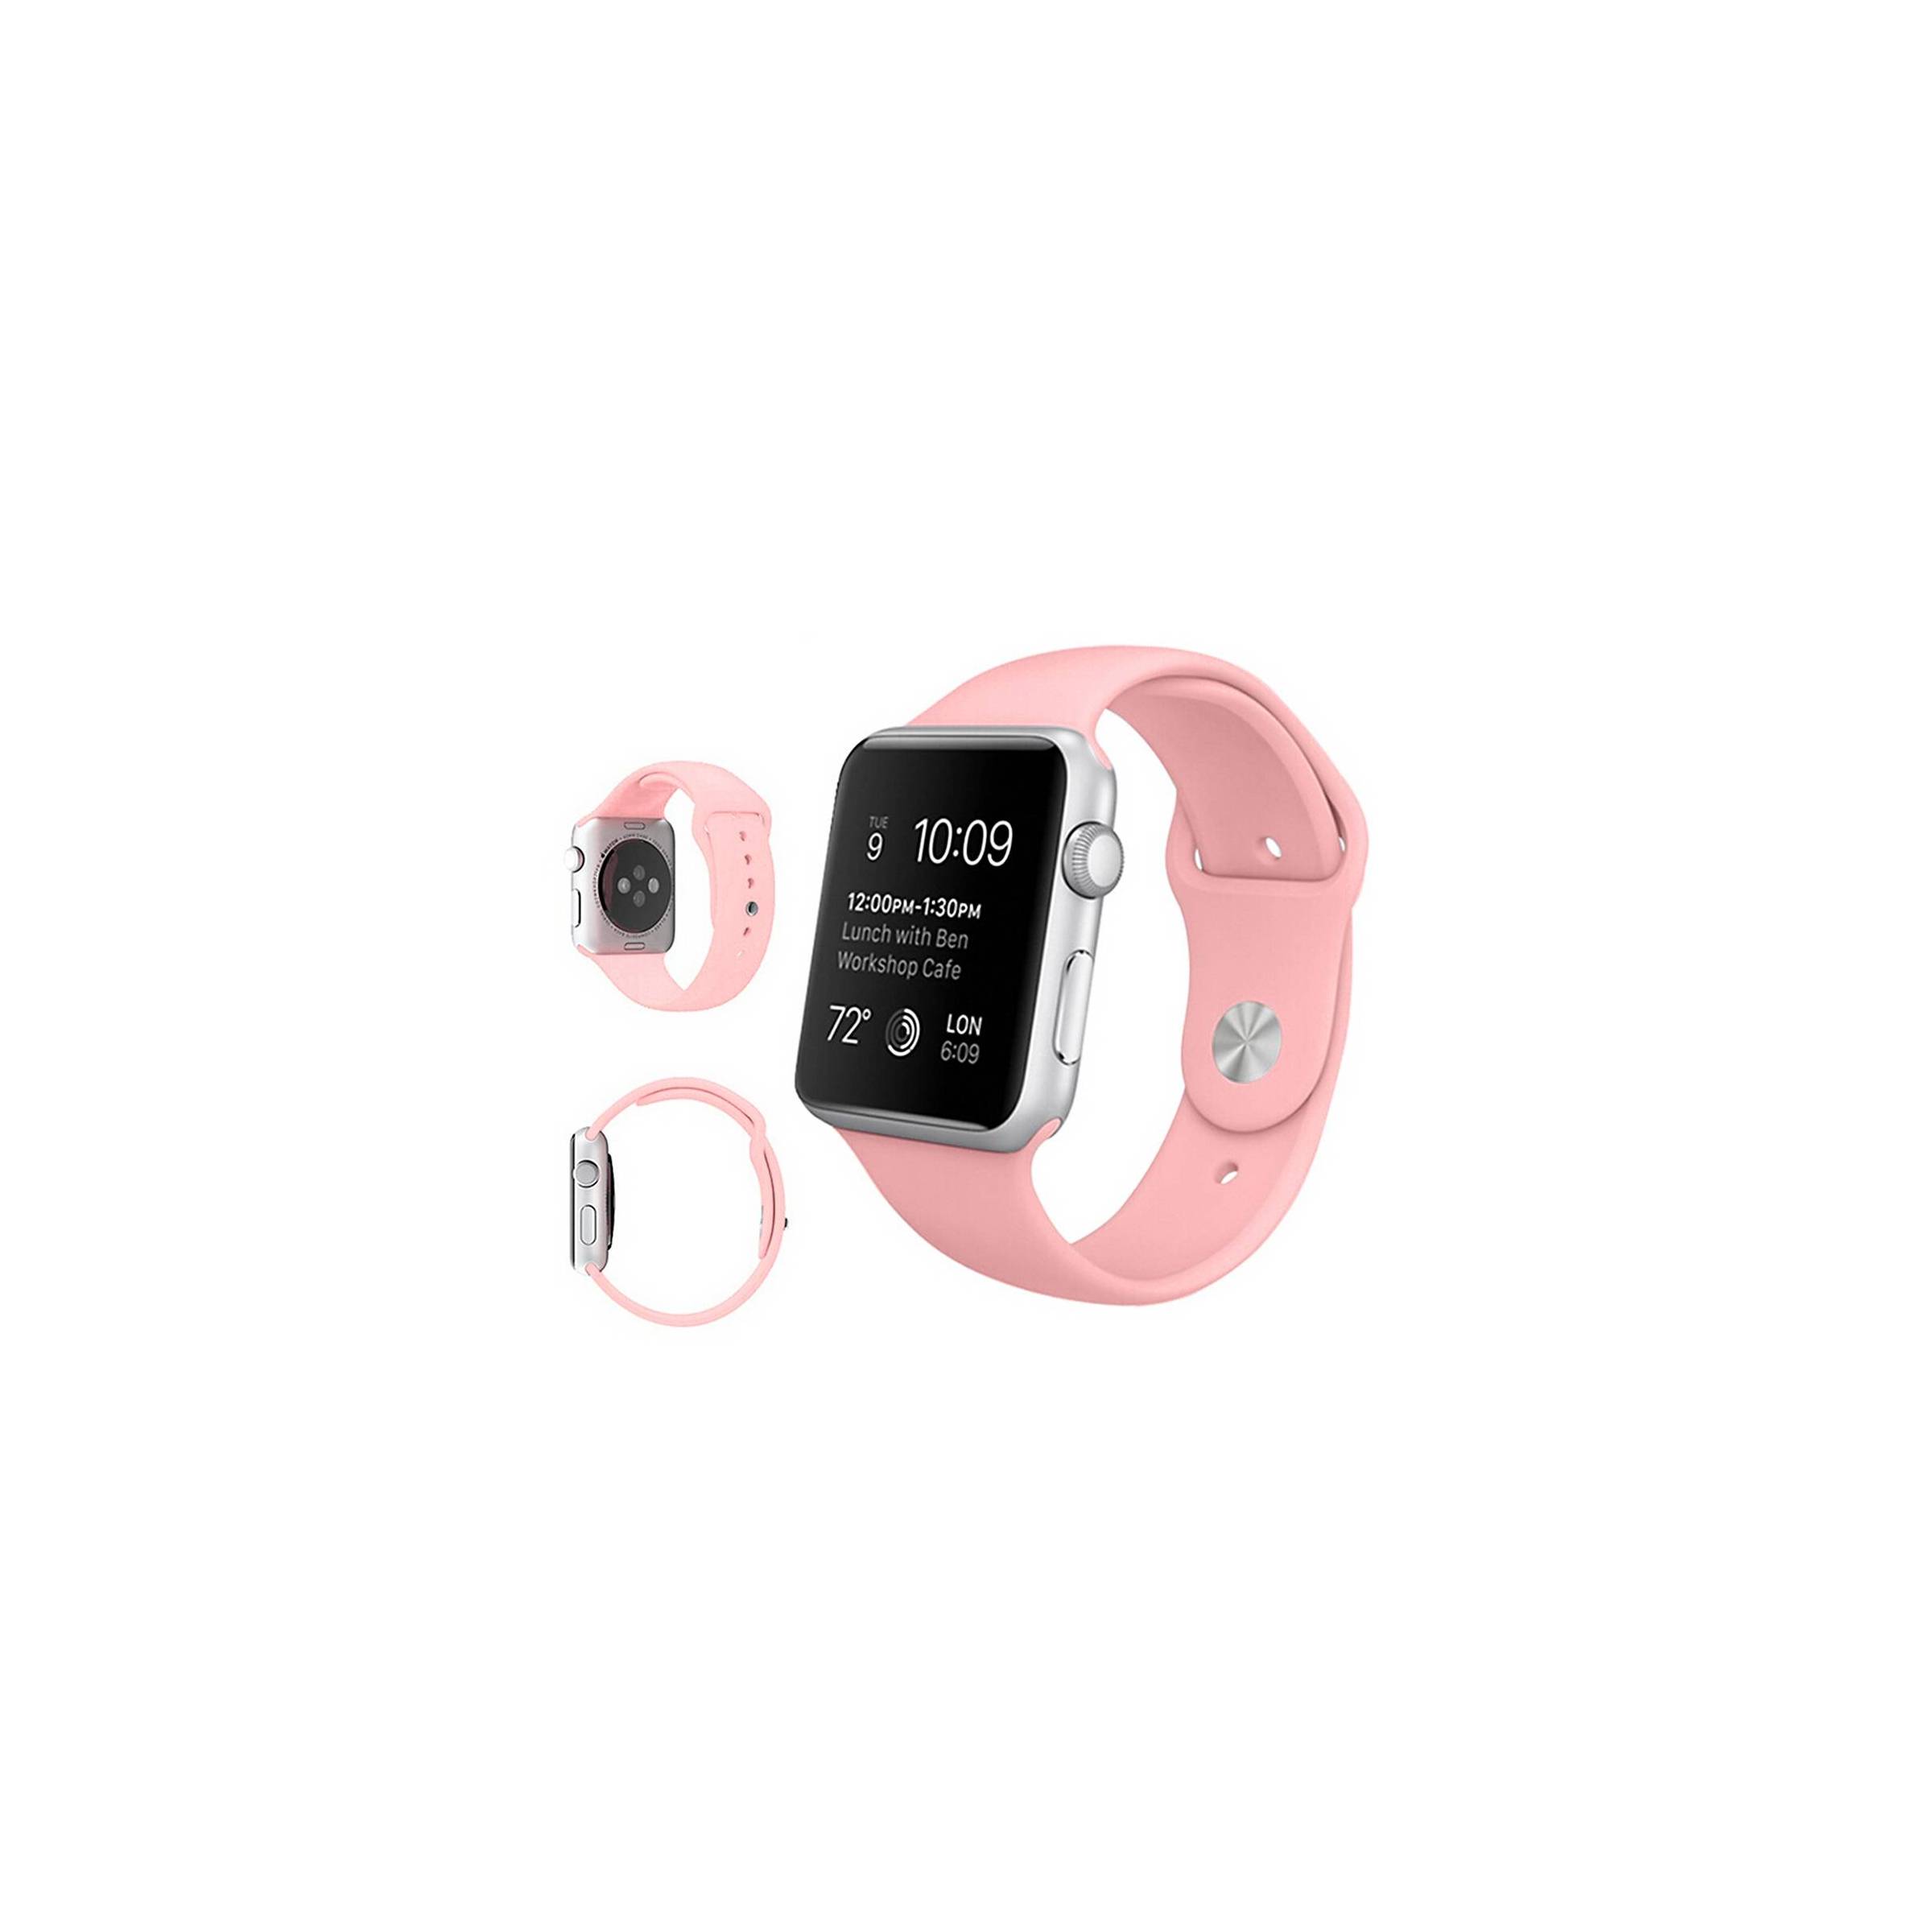 Bilde av Apple Watch Silikon Stropp- Flere Vakre Farger, Størrelse 42mm, Farge Rosa